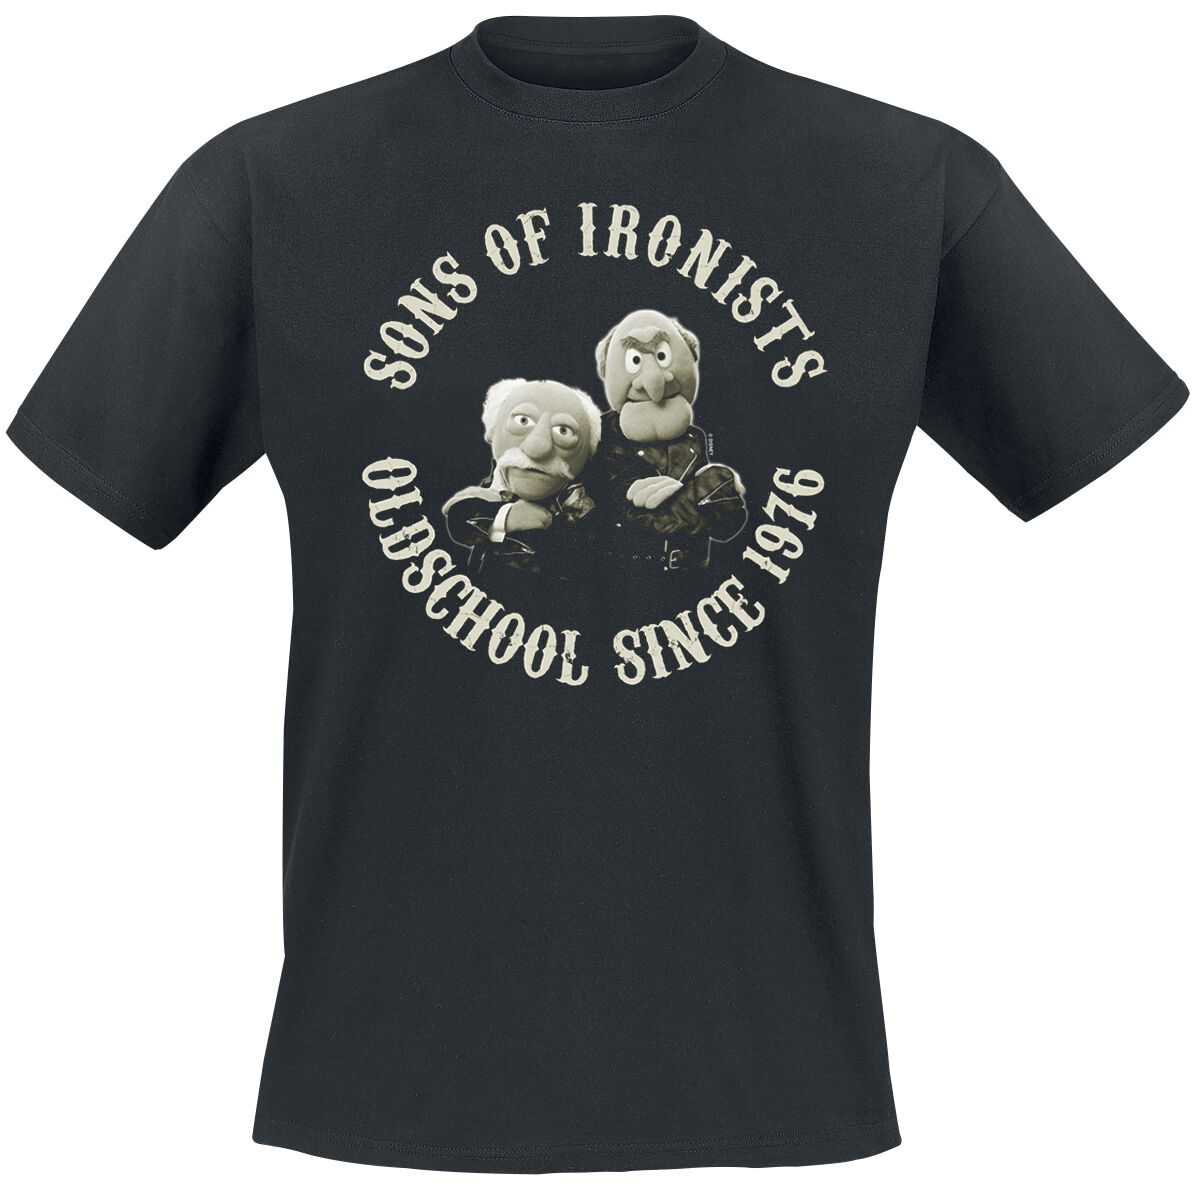 Die Muppets T-Shirt - Sons Of Ironists - M bis 5XL - für Männer - Größe XL - schwarz  - Lizenzierter Fanartikel